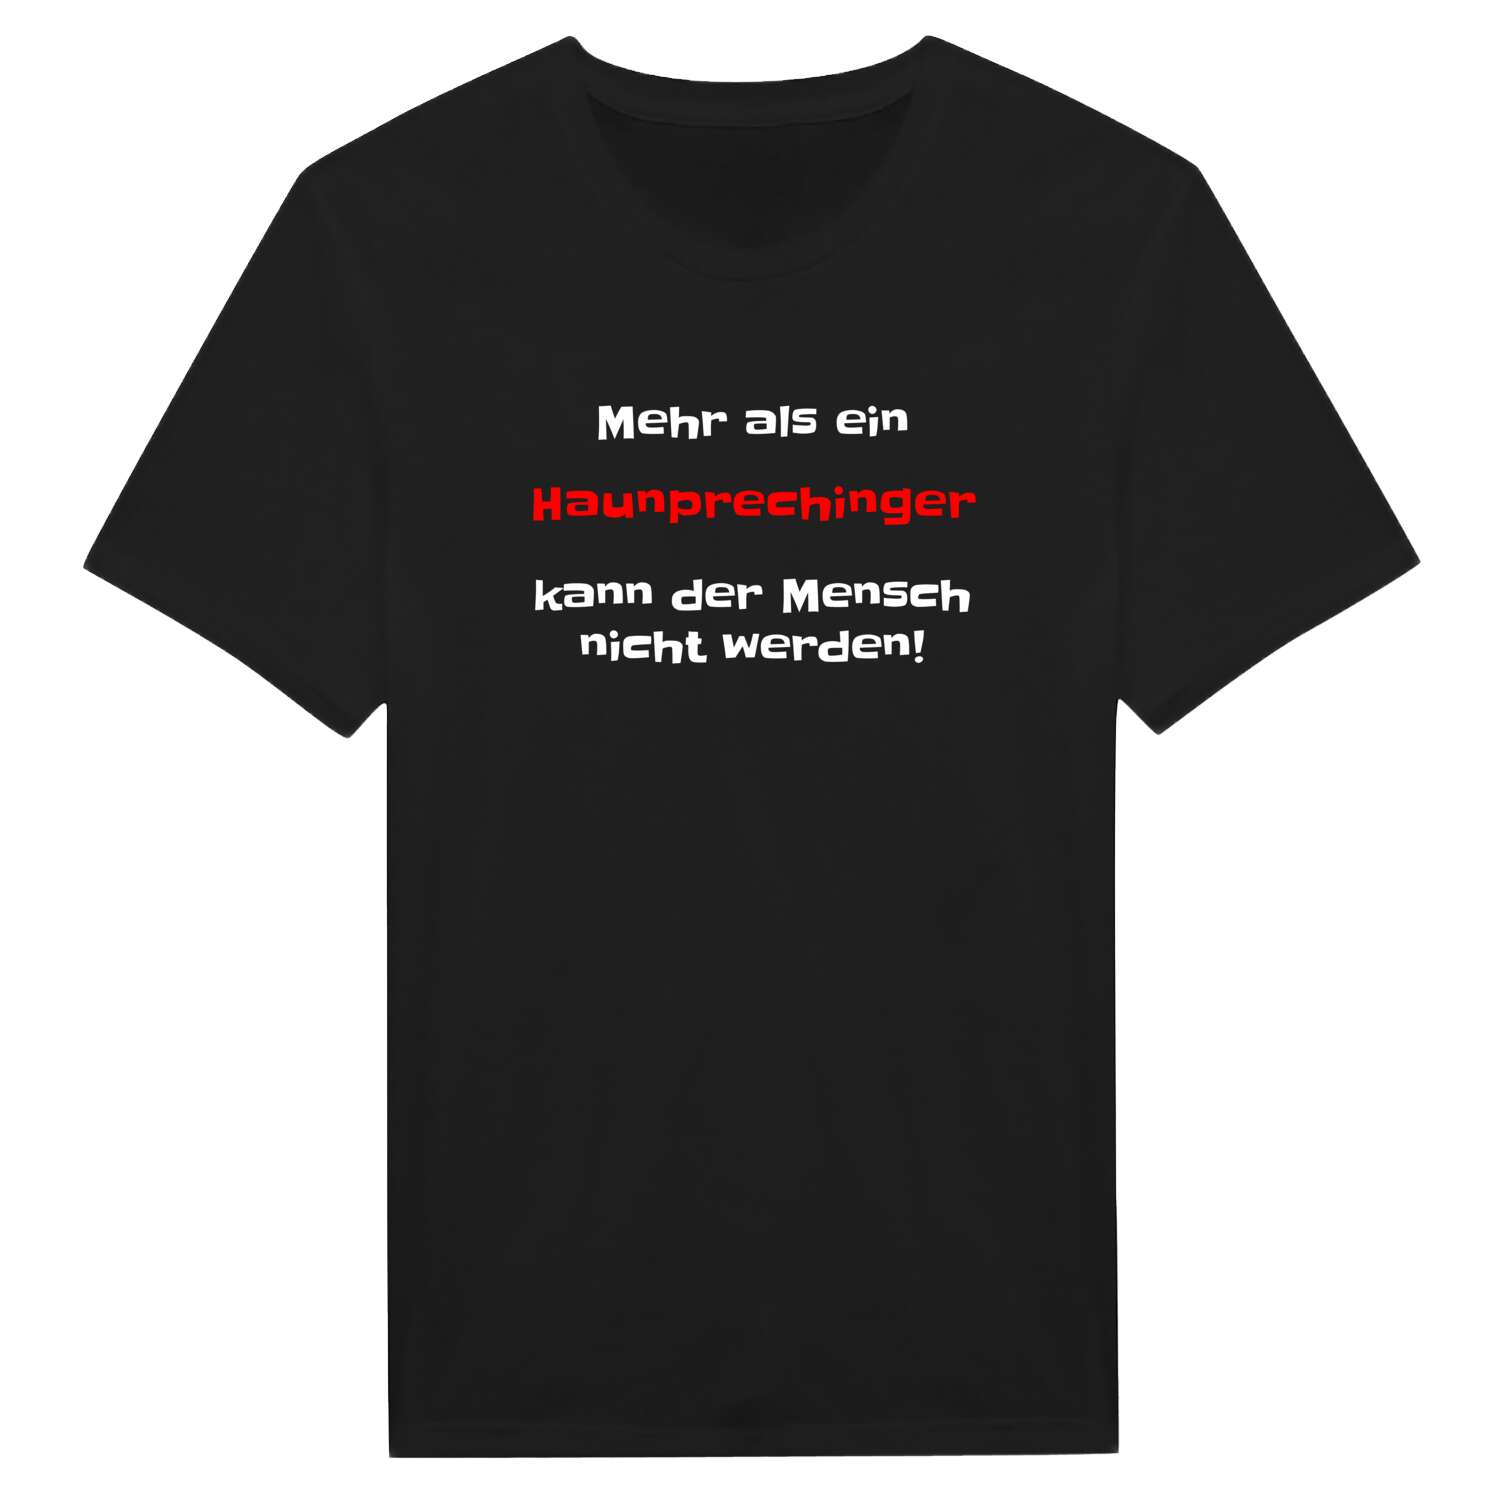 Haunpreching T-Shirt »Mehr als ein«